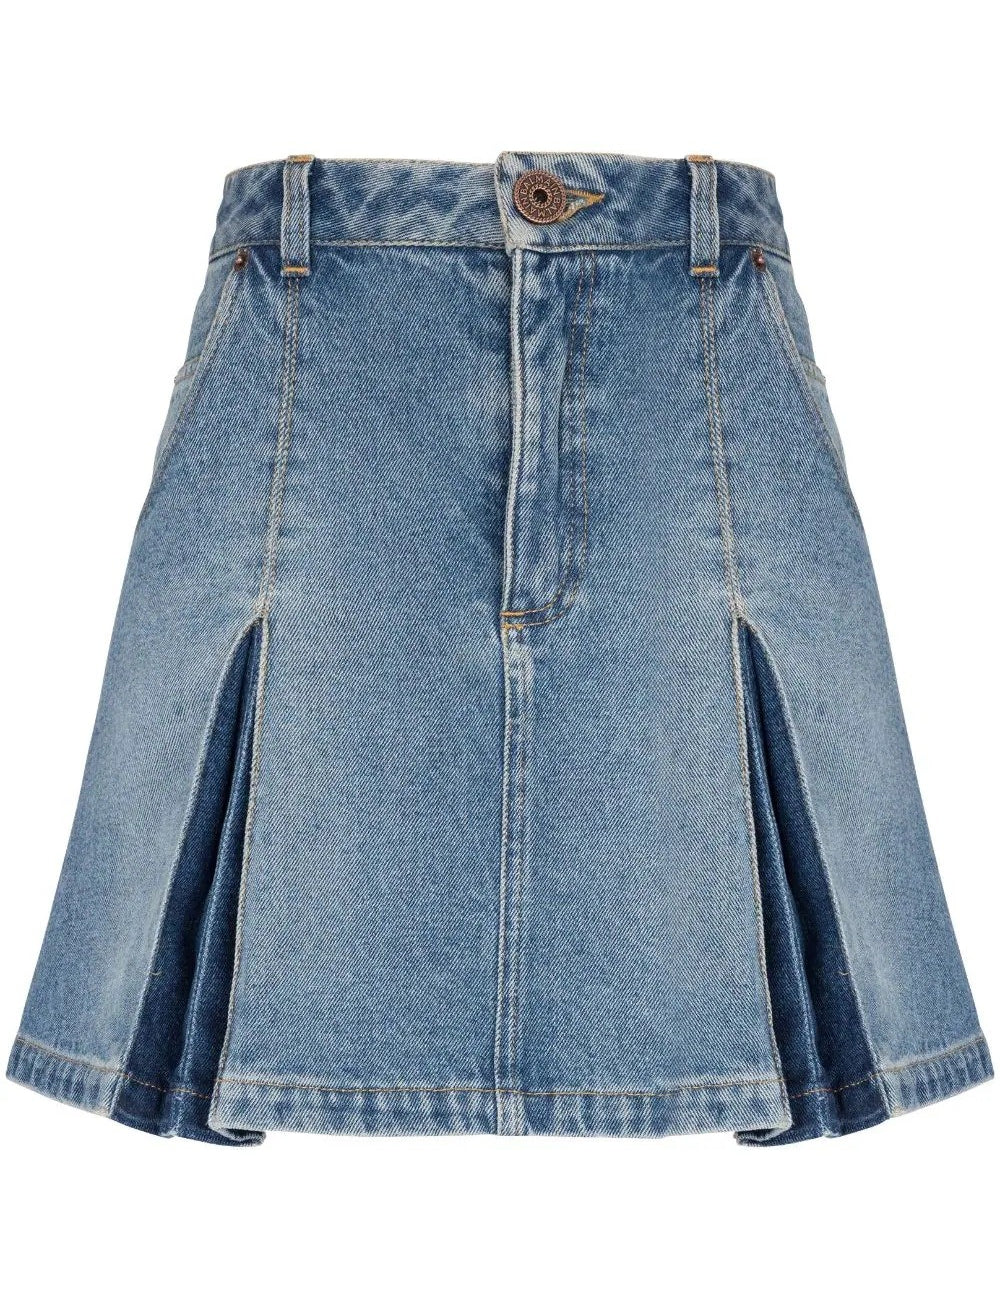 vintage-denim-pleated-skirt.jpg